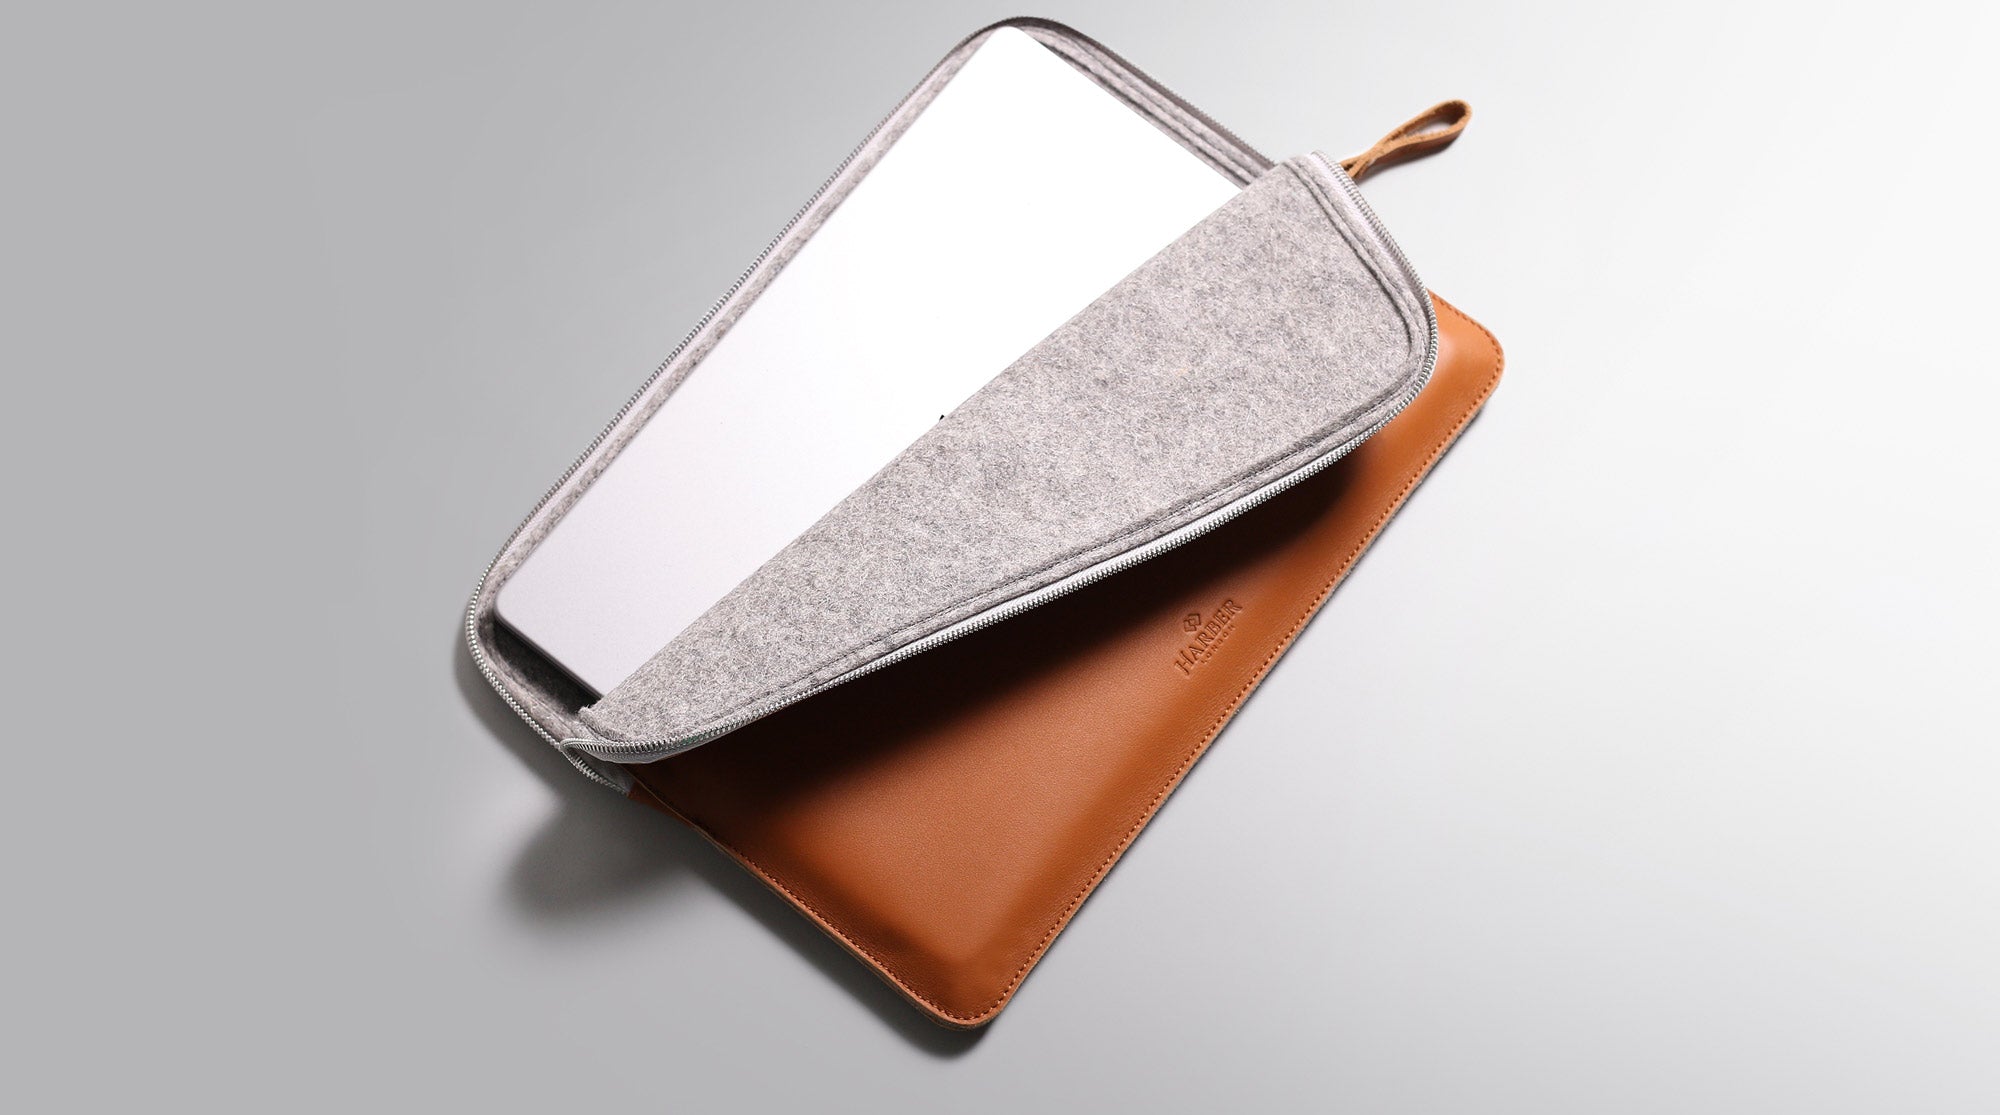 Exquisite MacBook Laptop Case  Ipad case, Gucci purses, Fashion